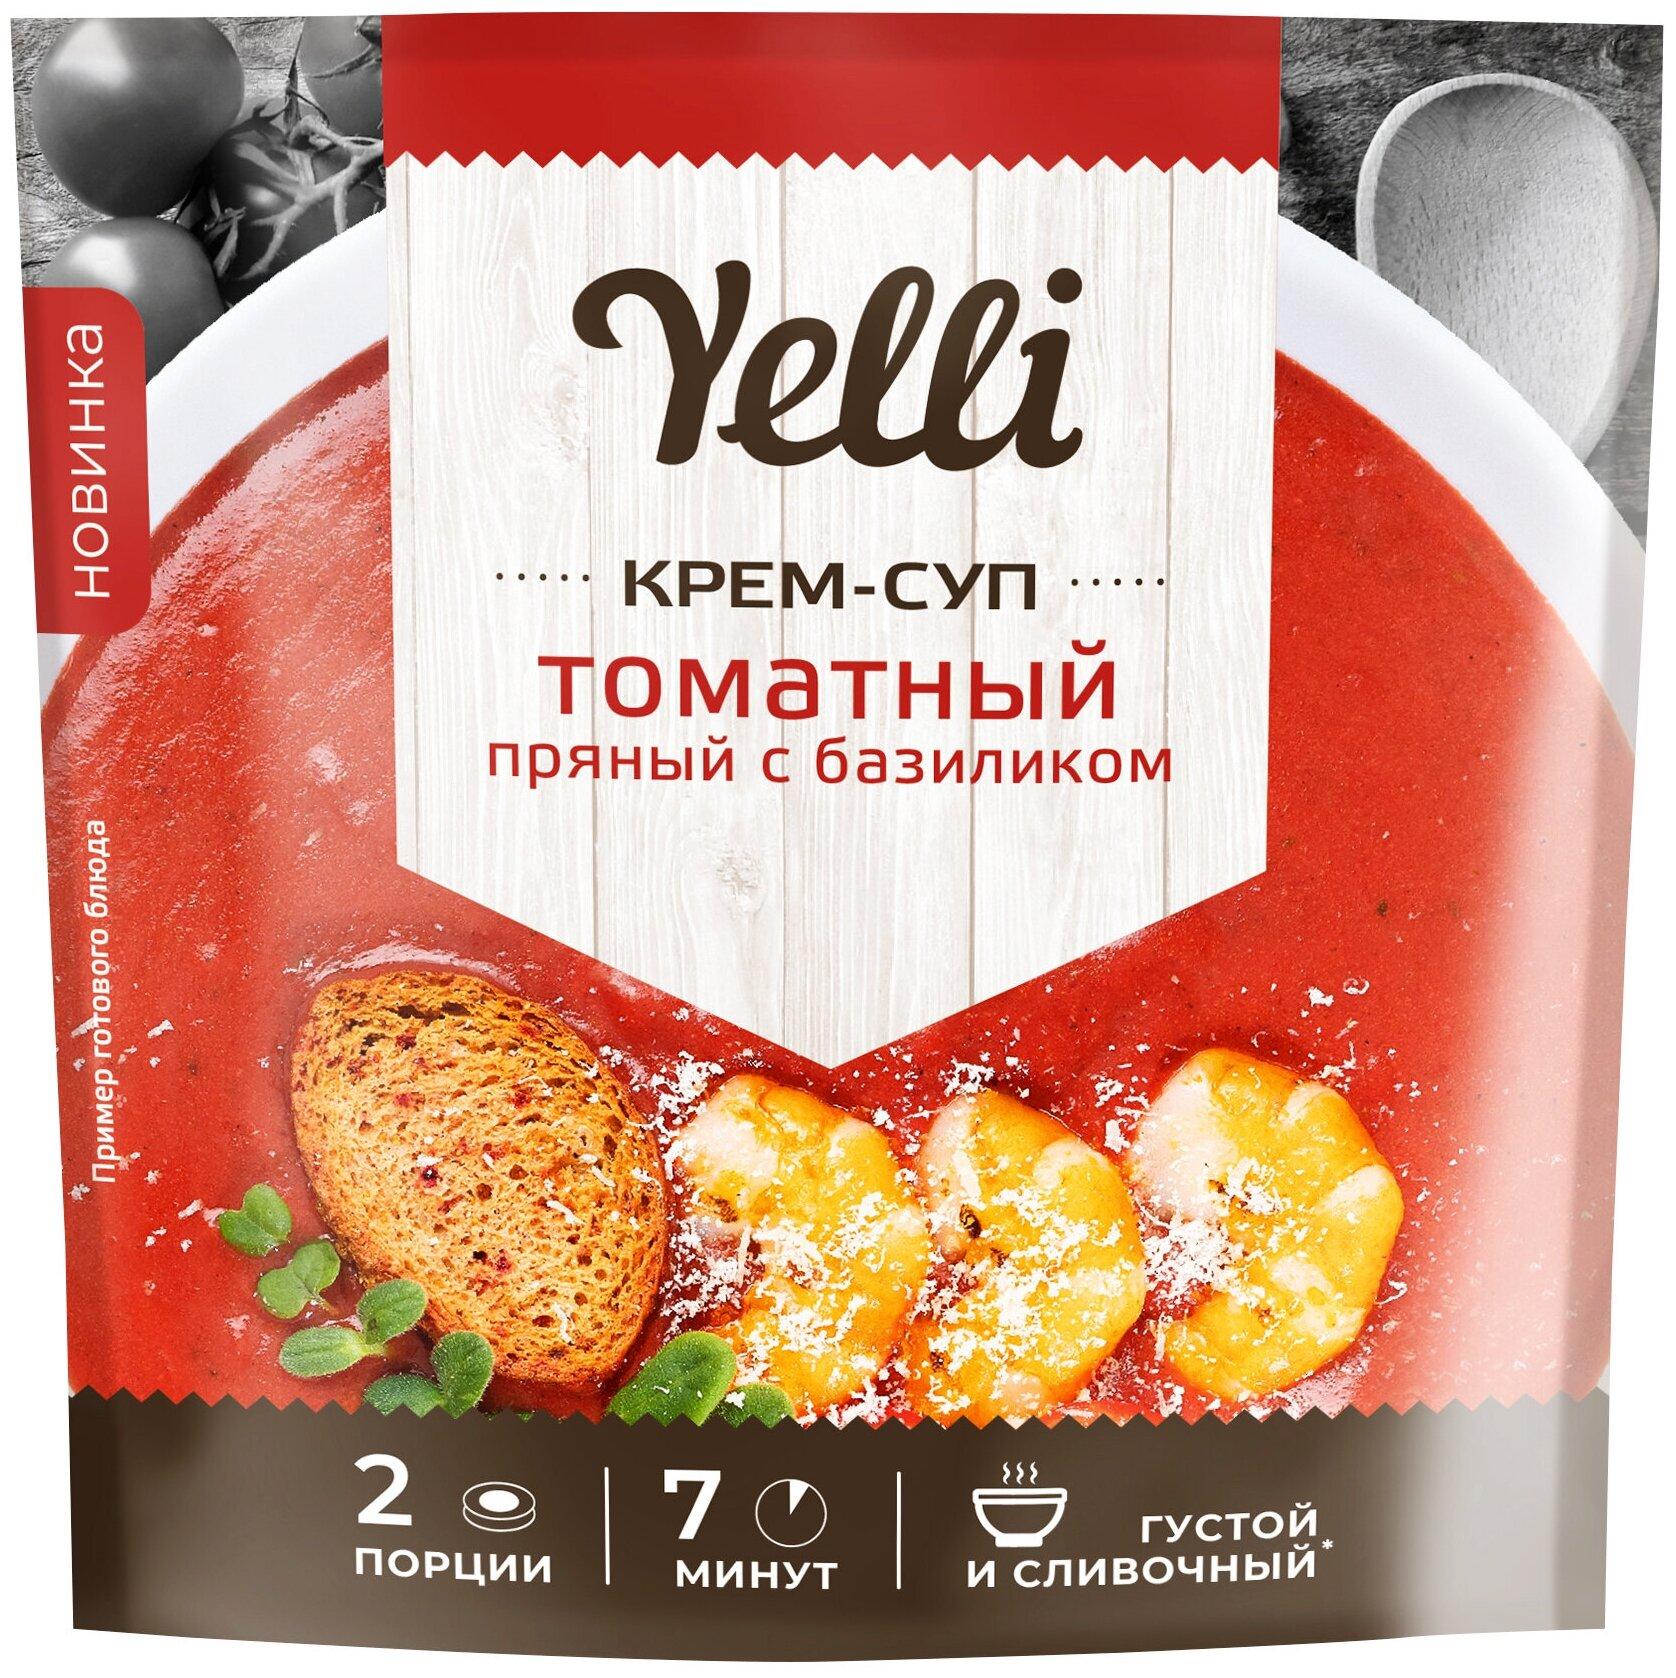 Крем-суп Yelli томатный пряный с базиликом 70 гр., дой-пак